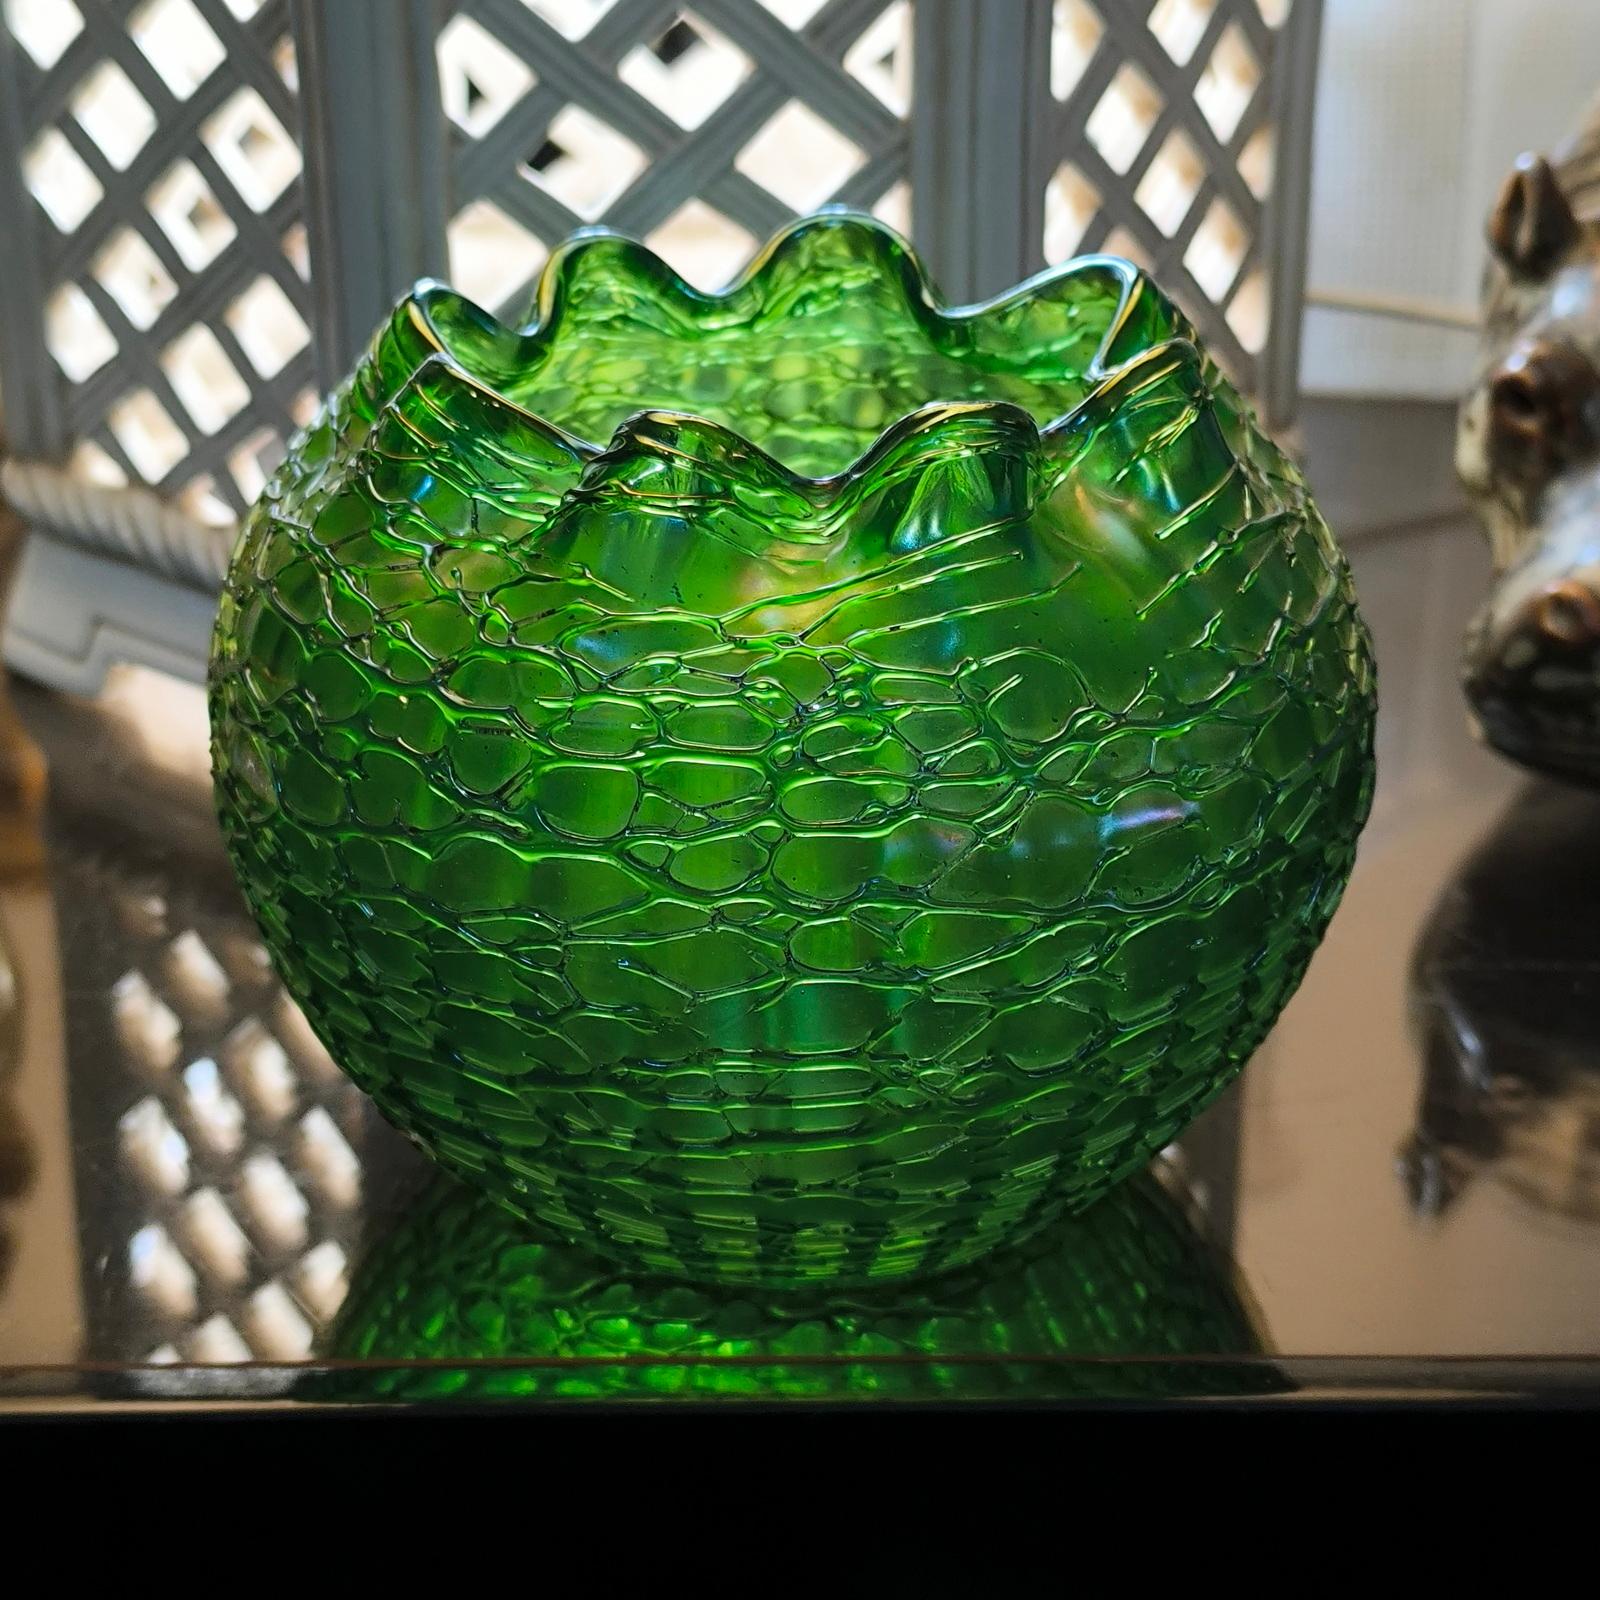 Un vase, Johann Lötz Witwe, Klostermühle, C.C. 1900
Décoration : Chiné de Crète (1896/97) ; verre vert incrusté ; pré-soufflé dans un moule nervuré en plusieurs parties ; soufflé au moule ; enveloppé d'une maille irrégulière de fils de verre vert ;